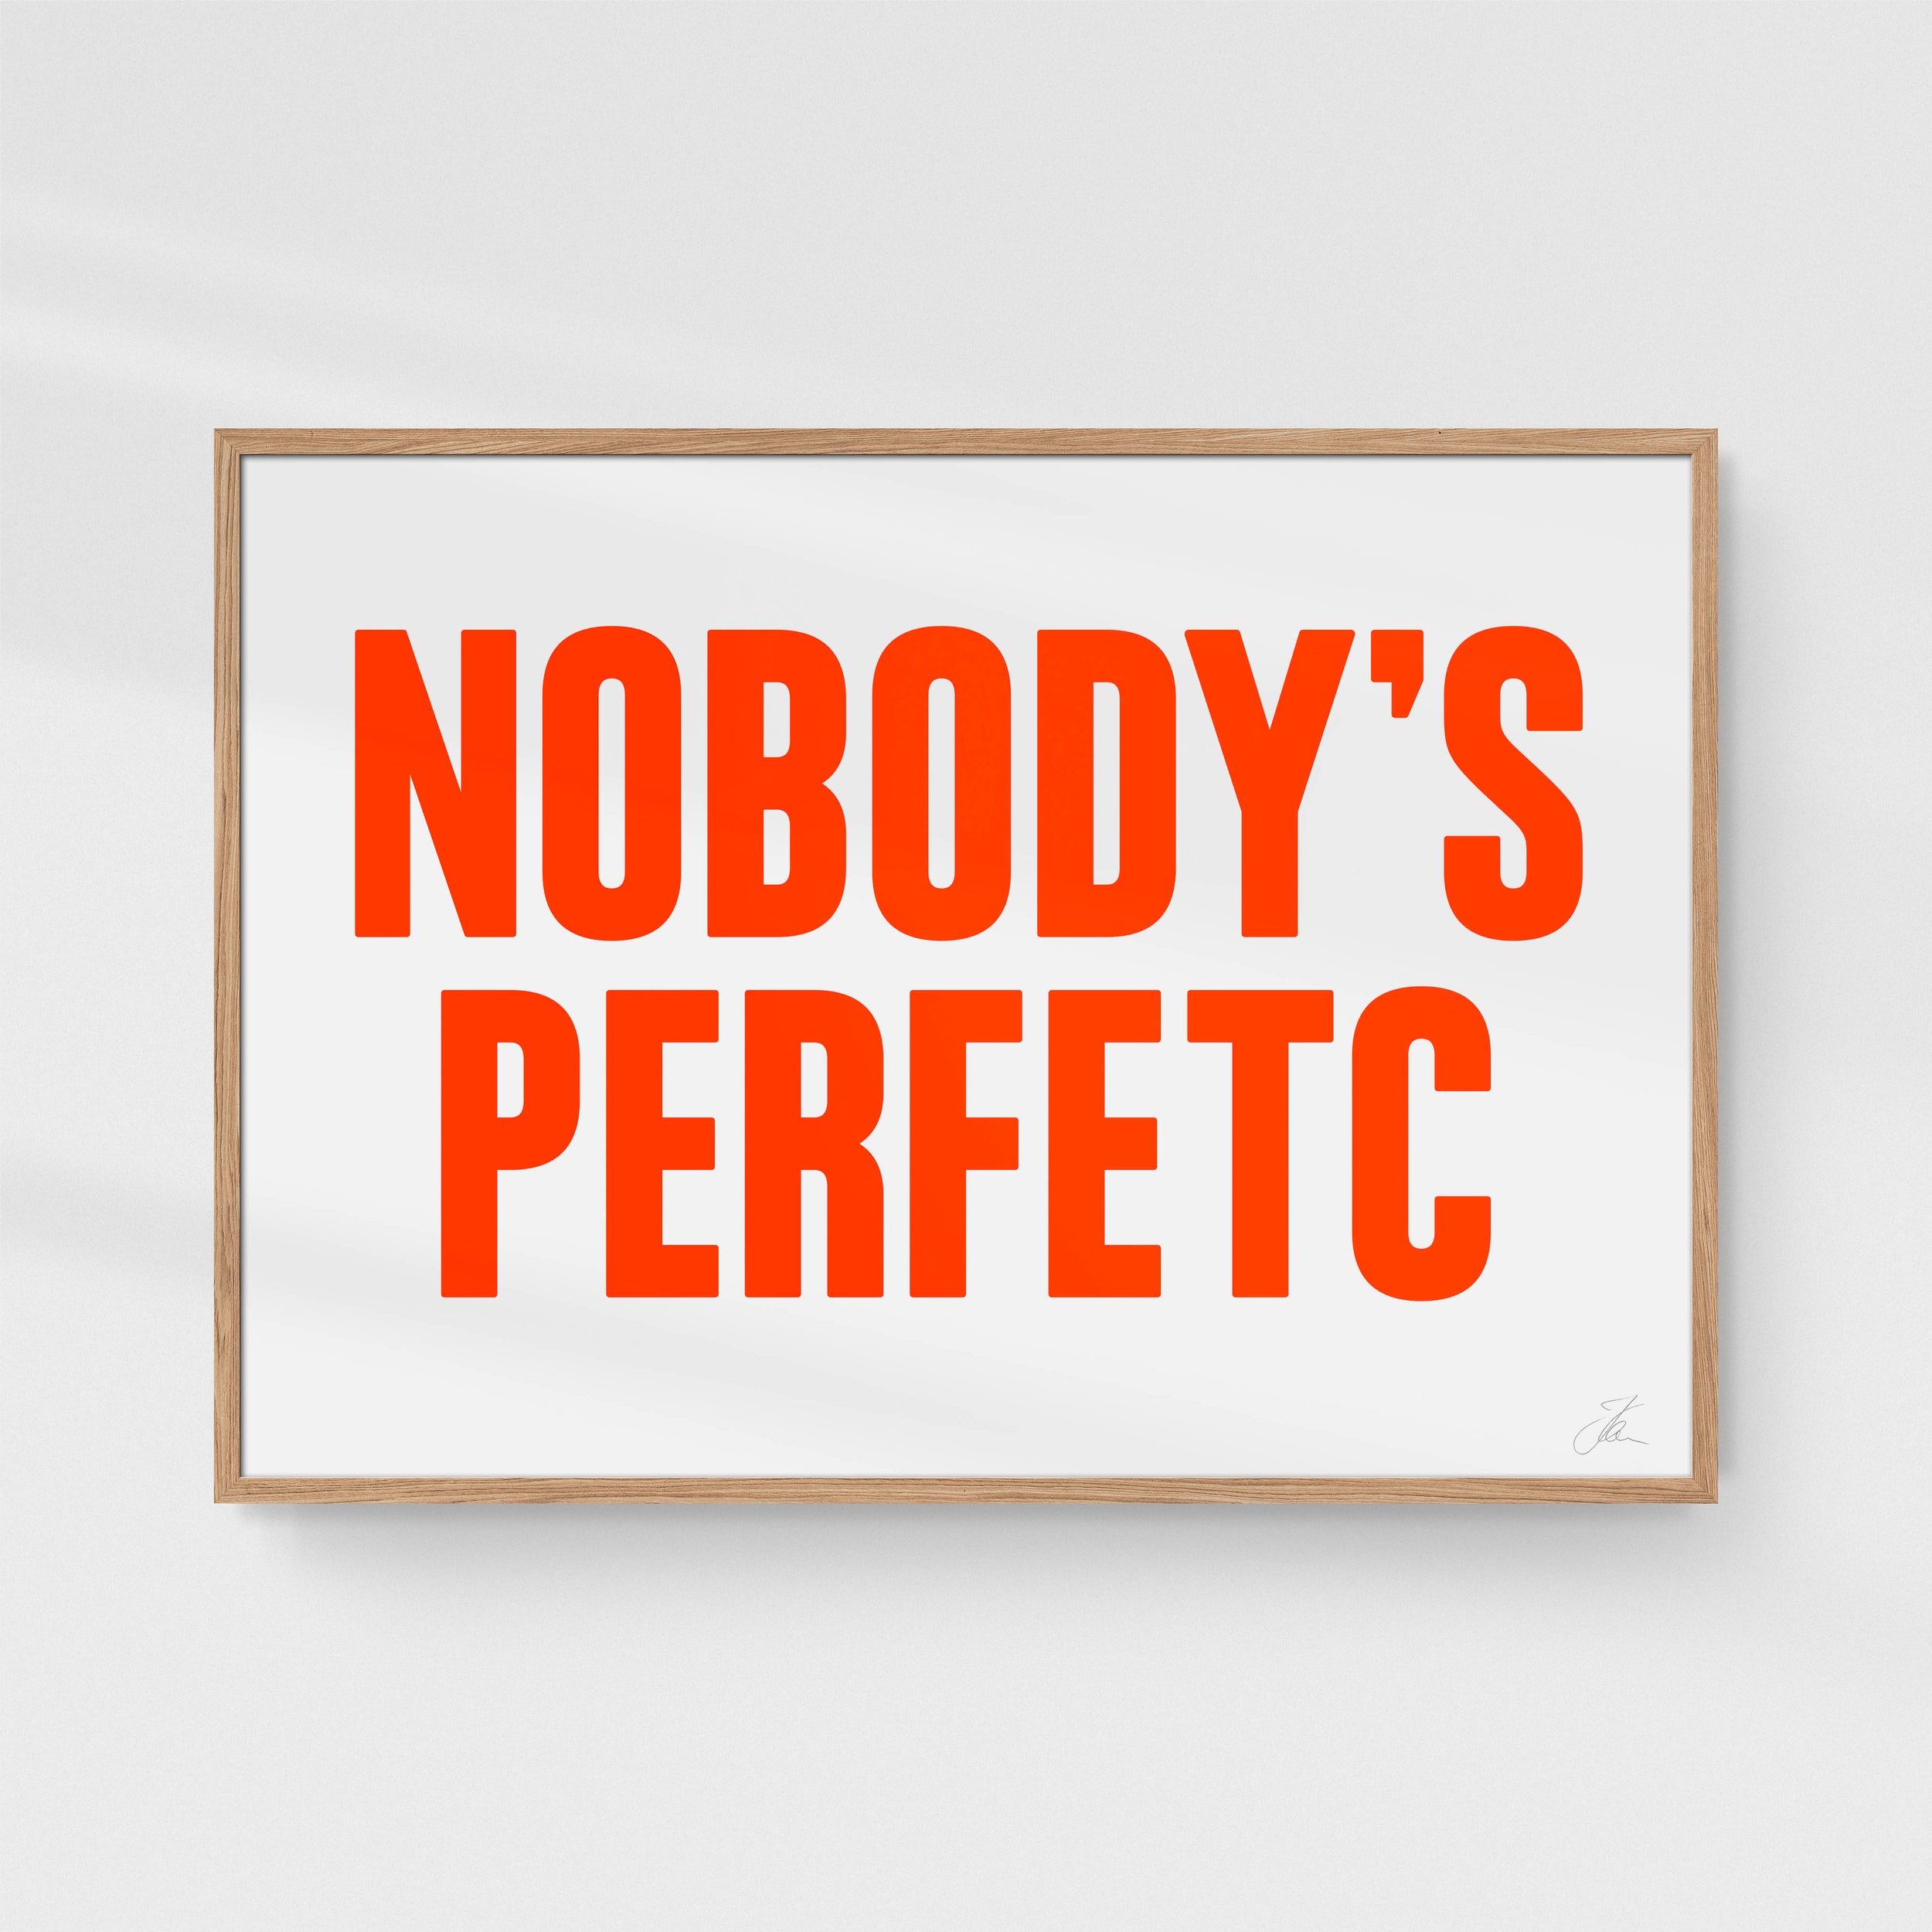 Nobody's perfetc